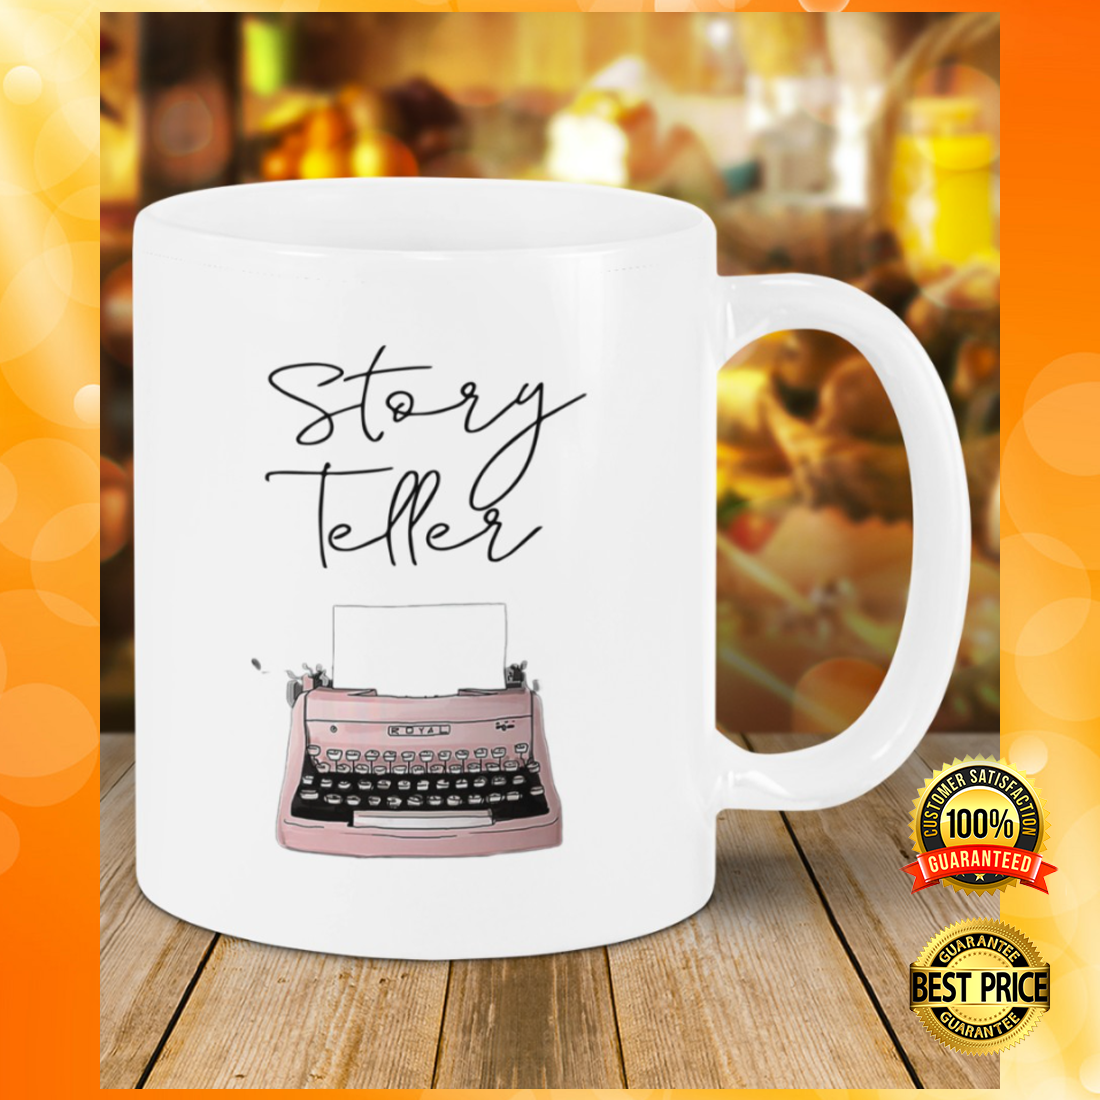 Writer Storyteller Mug 1